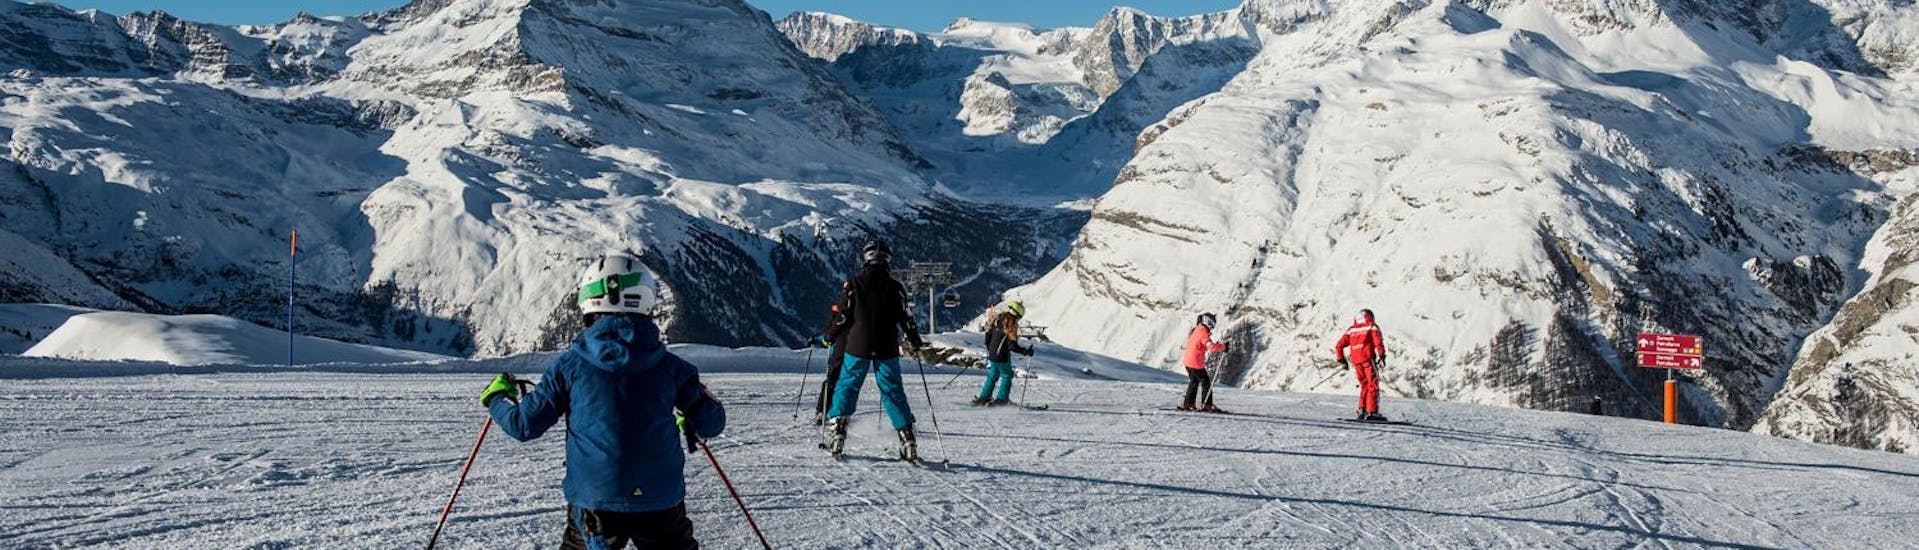 I partecipanti alle lezioni di sci per bambini (6-14 anni) - Esperti con Zermatters seguono il loro maestro di sci sulle piste del Matterhorn Ski Paradise.